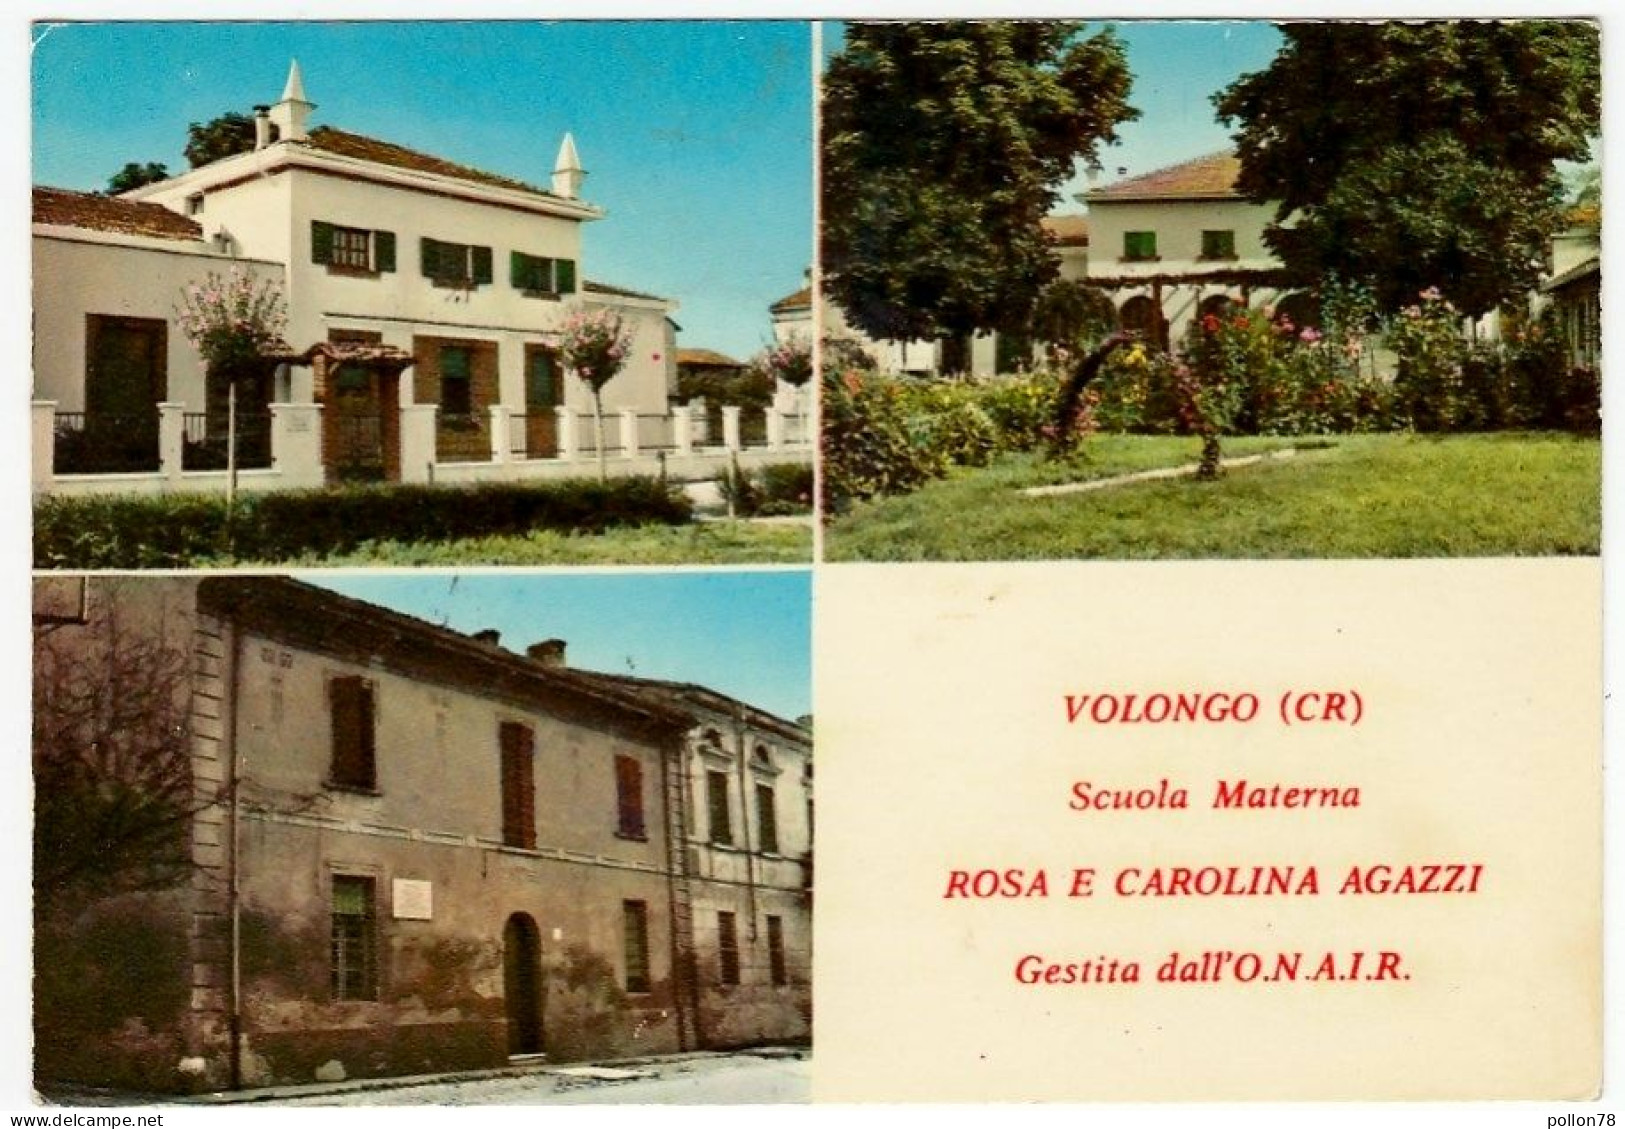 VOLONGO - SCUOLA MATERNA ROSA E CAROLINA AGAZZI - GESTITA Dall' O.N.A.I.R. - VEDUTE - CREMONA - 1970 - Cremona